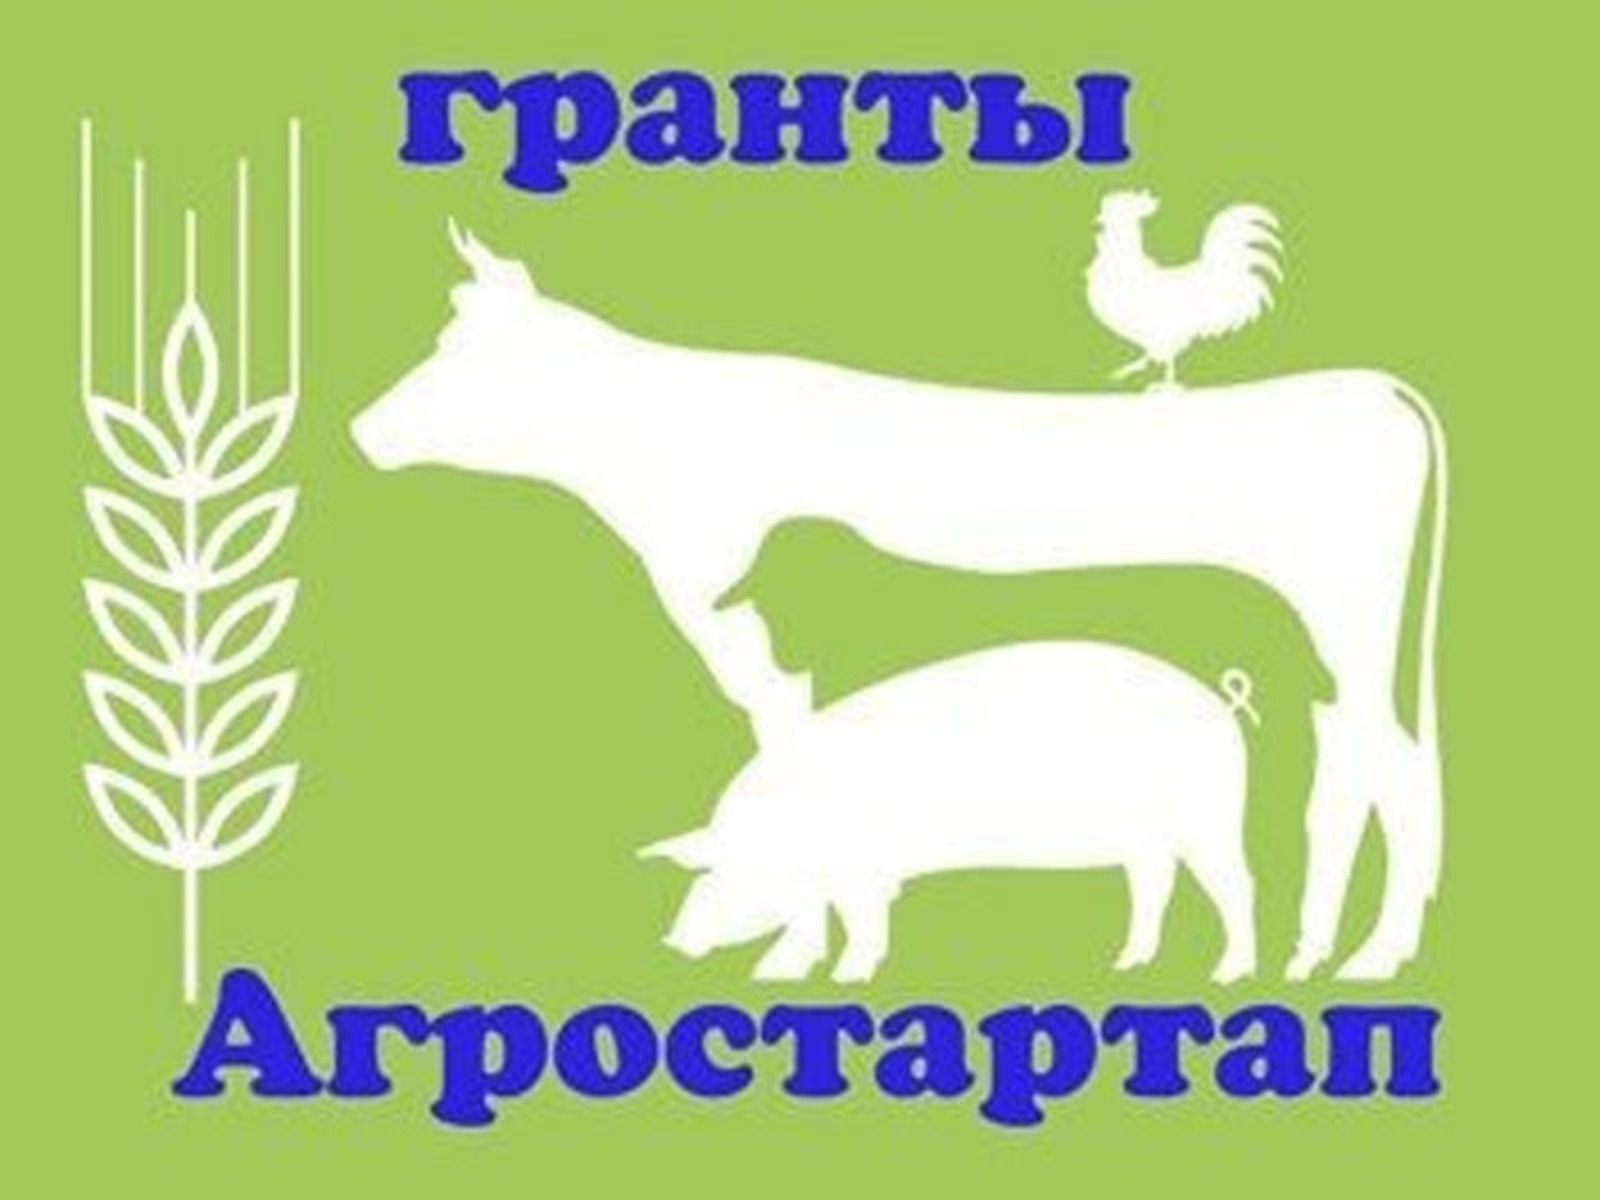 Башҡортостанда "Агростартап" конкурсына ғаризалар ҡабул ителә башлай